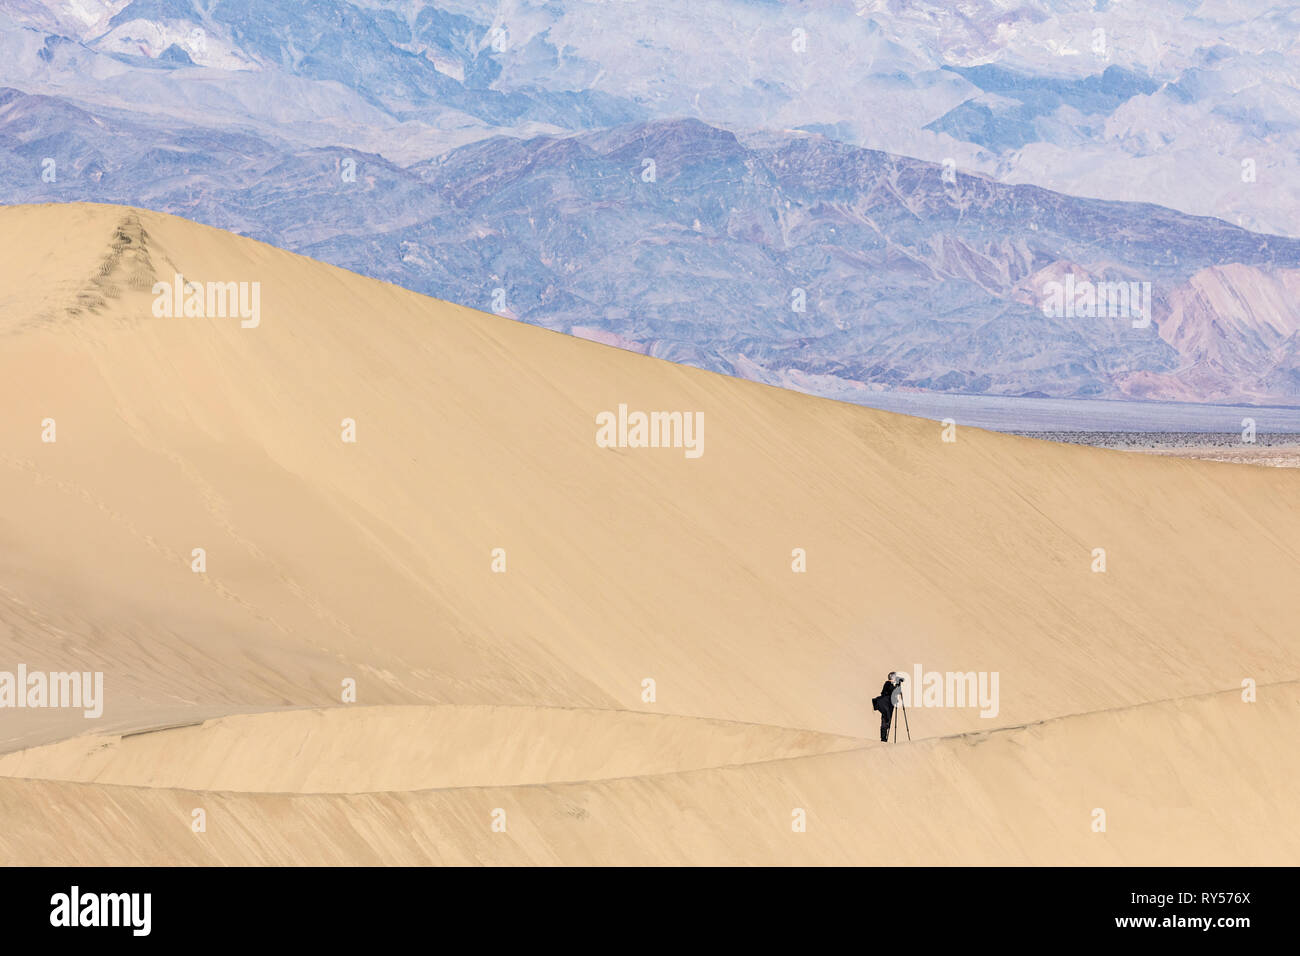 Mesquite Flat Sand Dunes ist ein ausgedehntes Gebiet von berggesäumten Sanddünen, die 100 Fuß erreichen und ein idealer Ort für Wanderer und Fotografen. Stockfoto